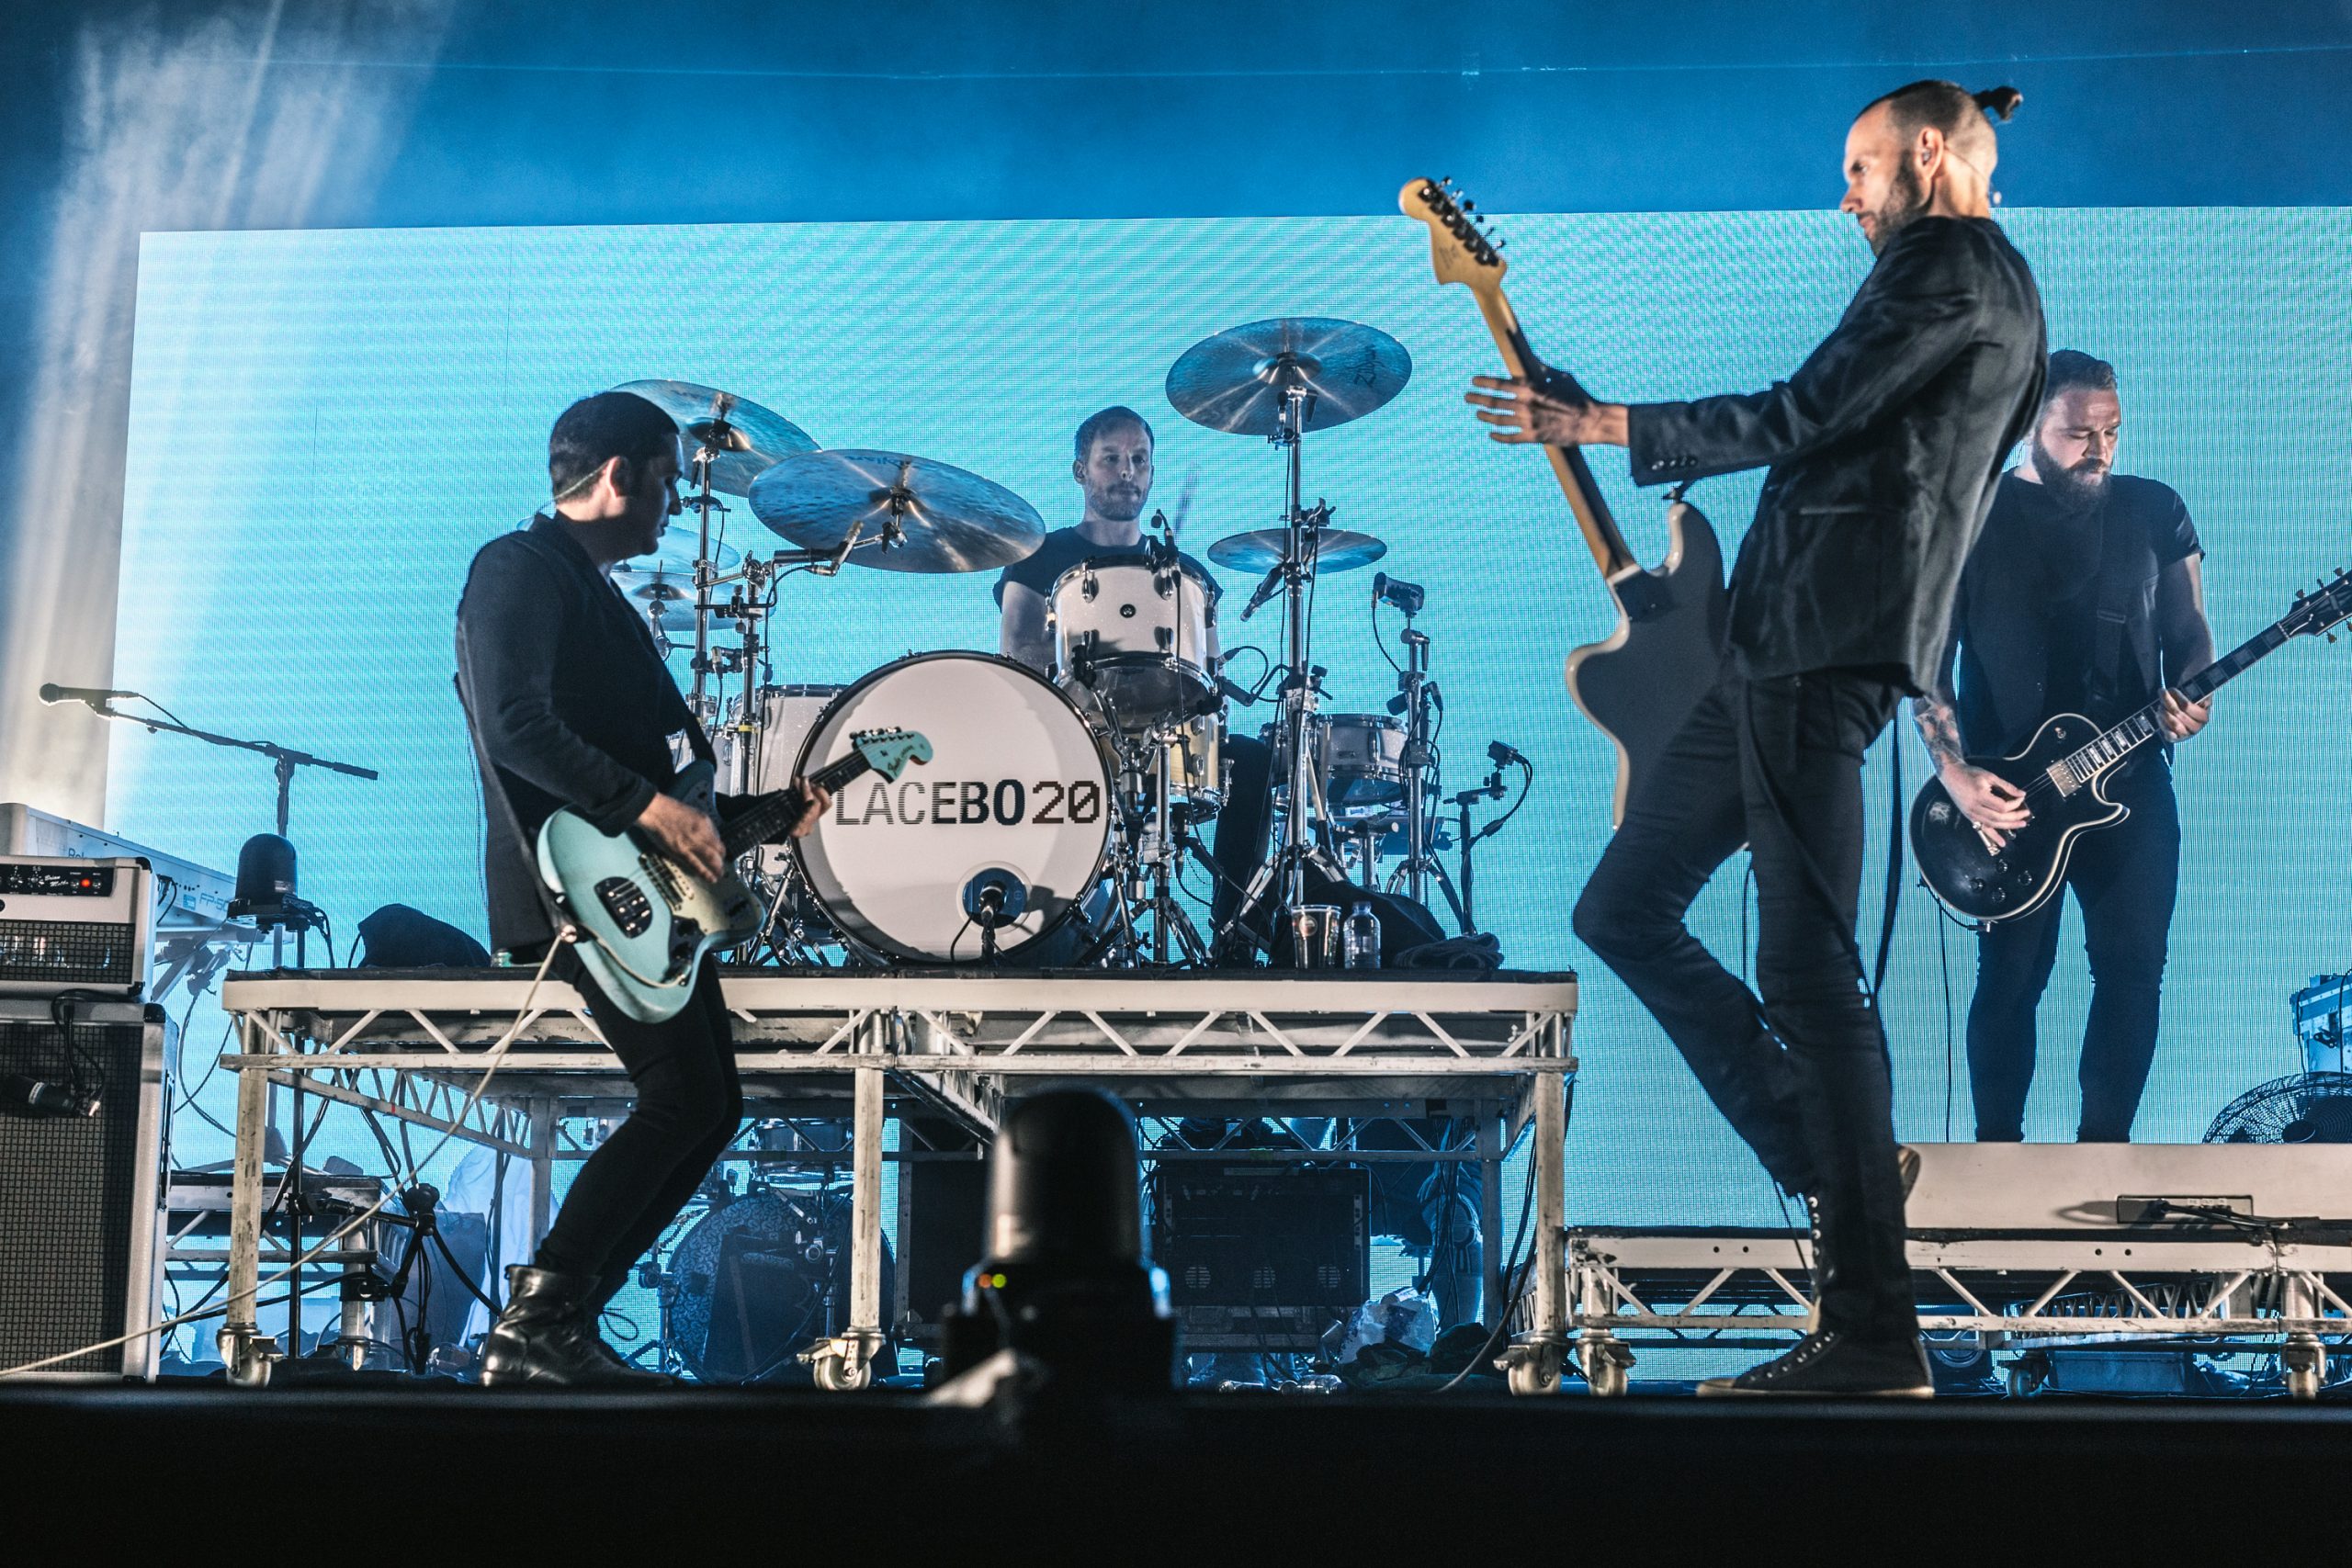 ¡Placebo transmitirá en línea sus shows en el Vive Latino y en Guadalajara!